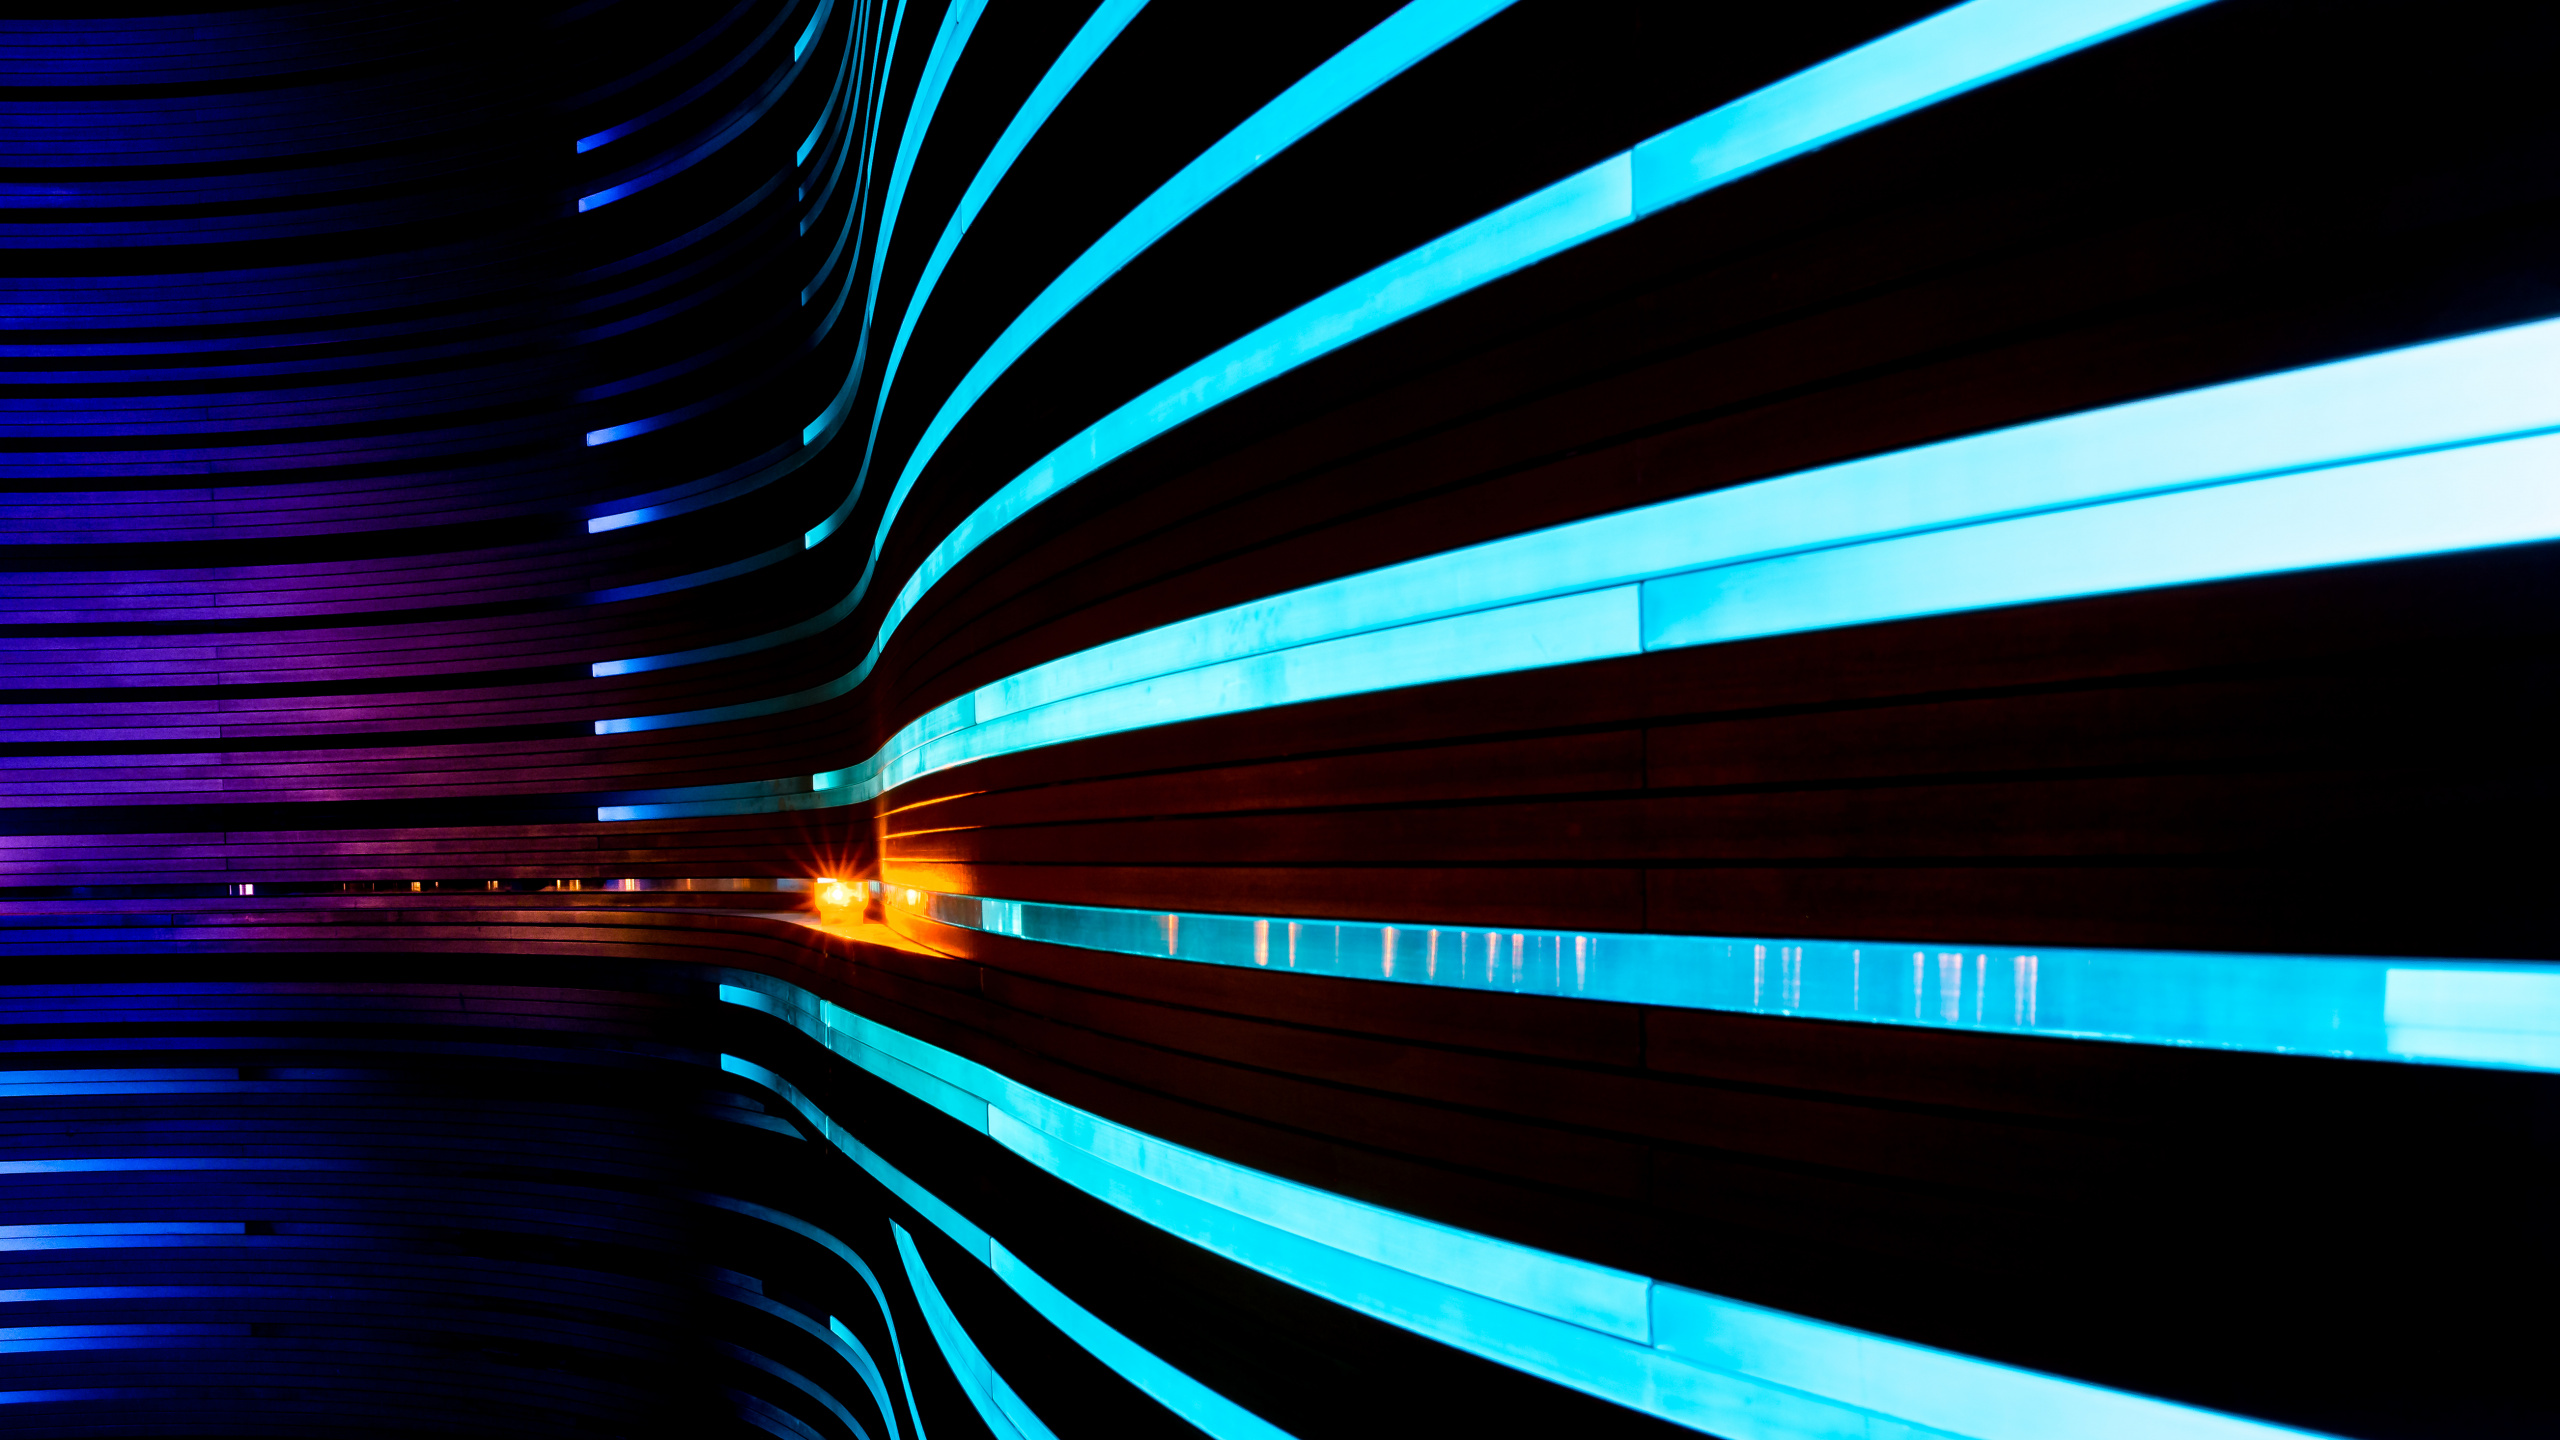 Lumière Bleue et Noire Dans le Tunnel. Wallpaper in 2560x1440 Resolution